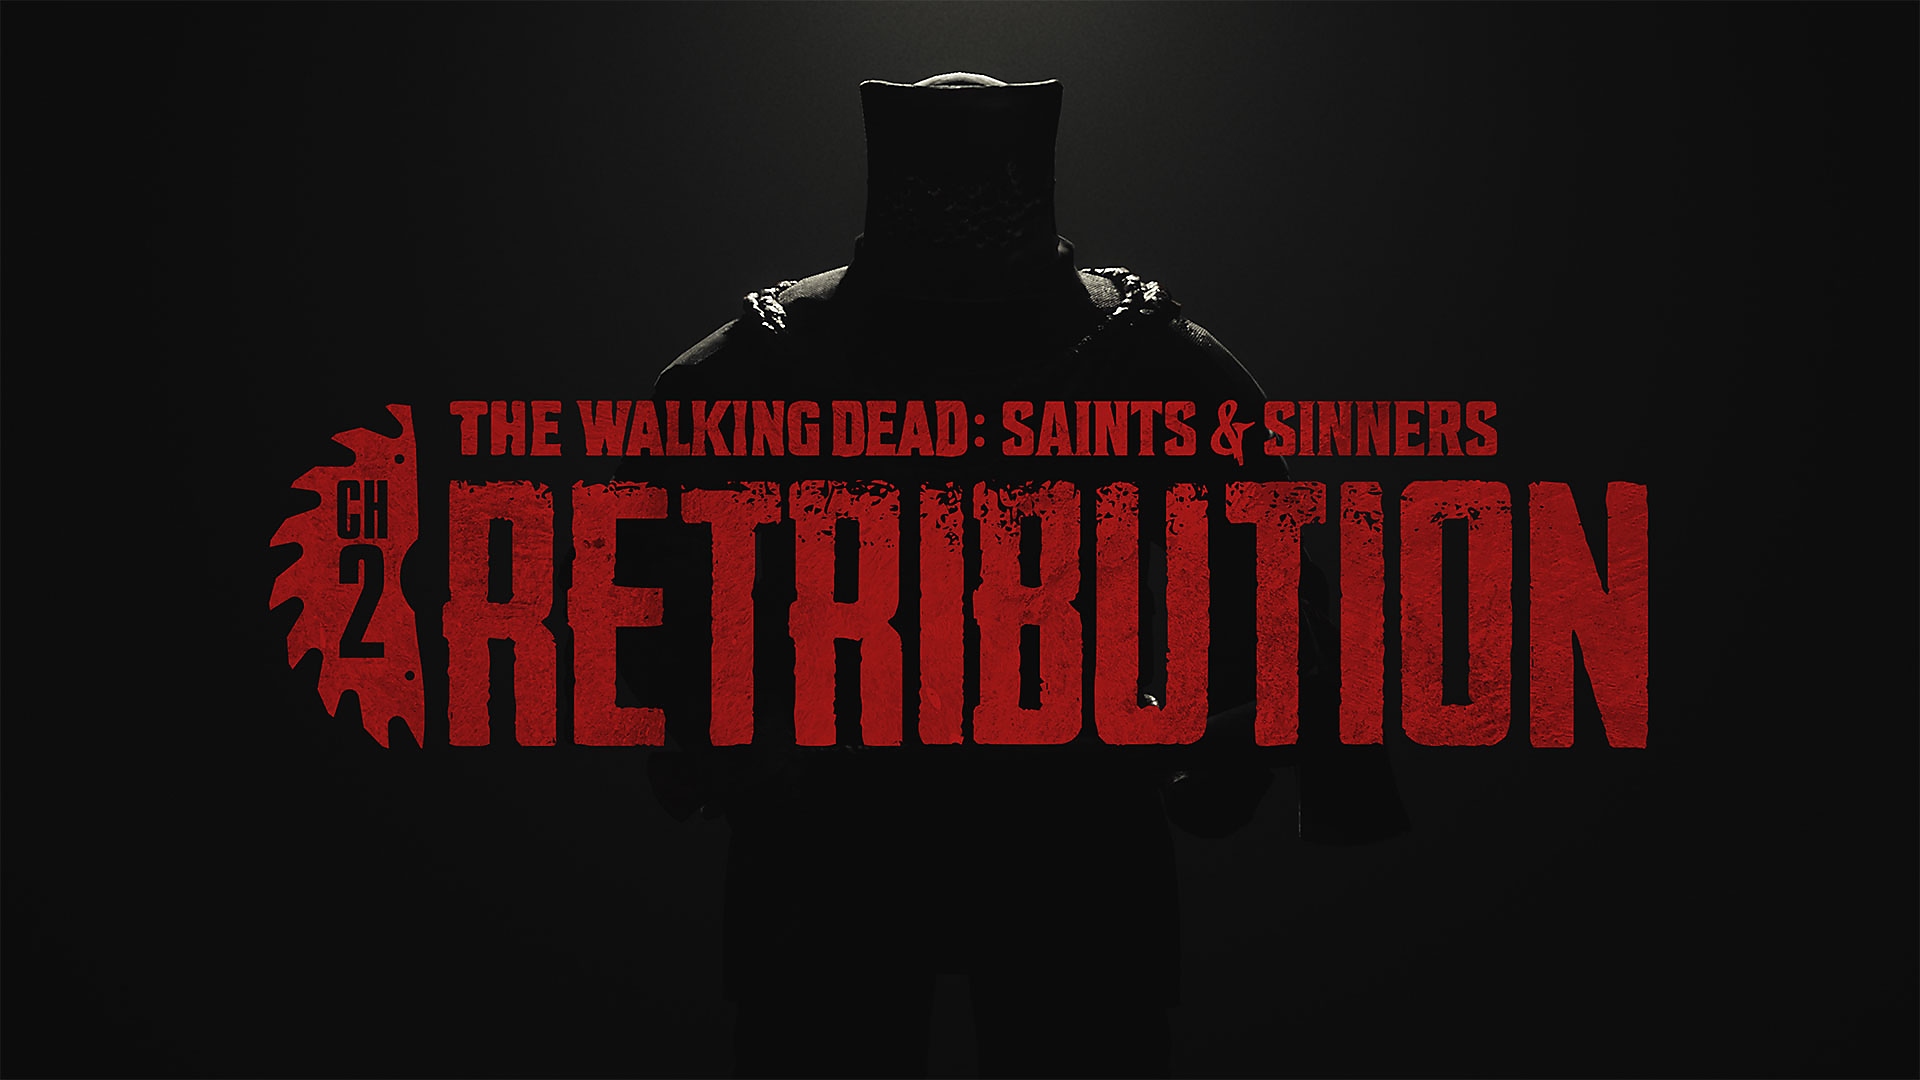 The Walking Dead: Saints & Sinners - Chapter 2: Retribution trailer